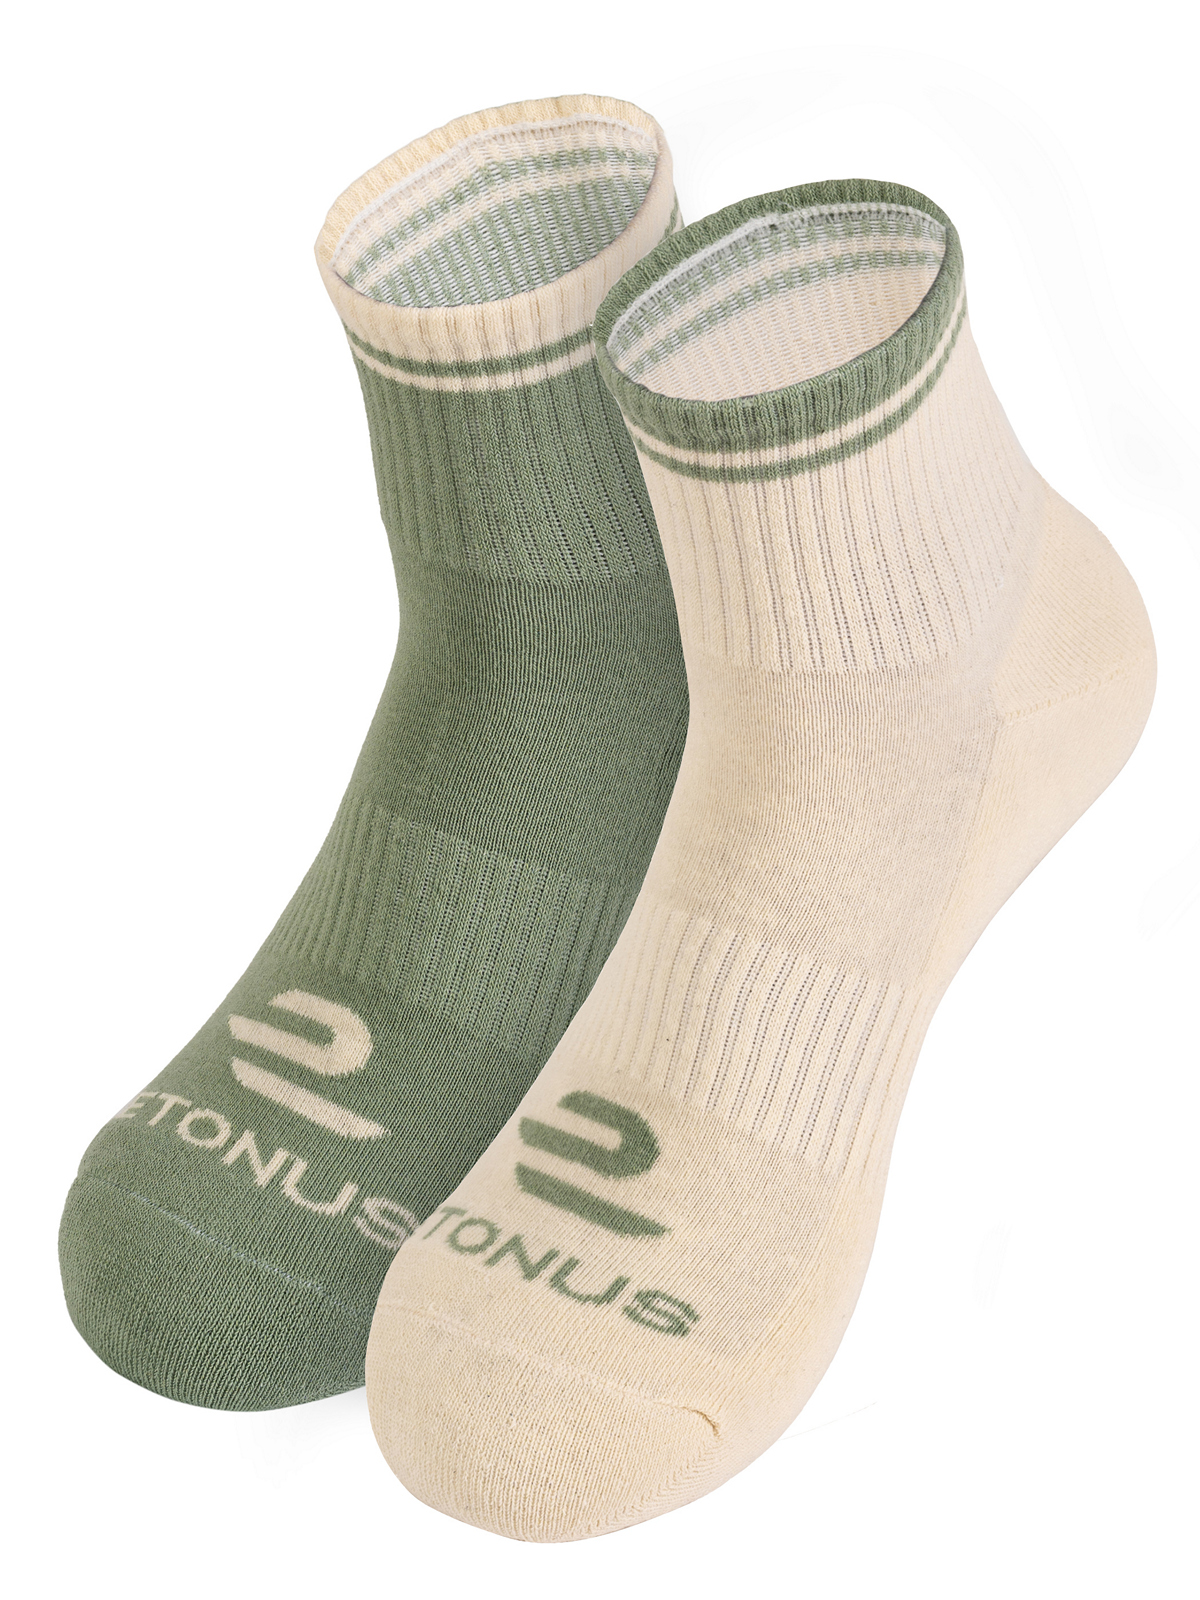 Комплект носков унисекс Etonus Playing-2 бежевый; зеленый 39-44